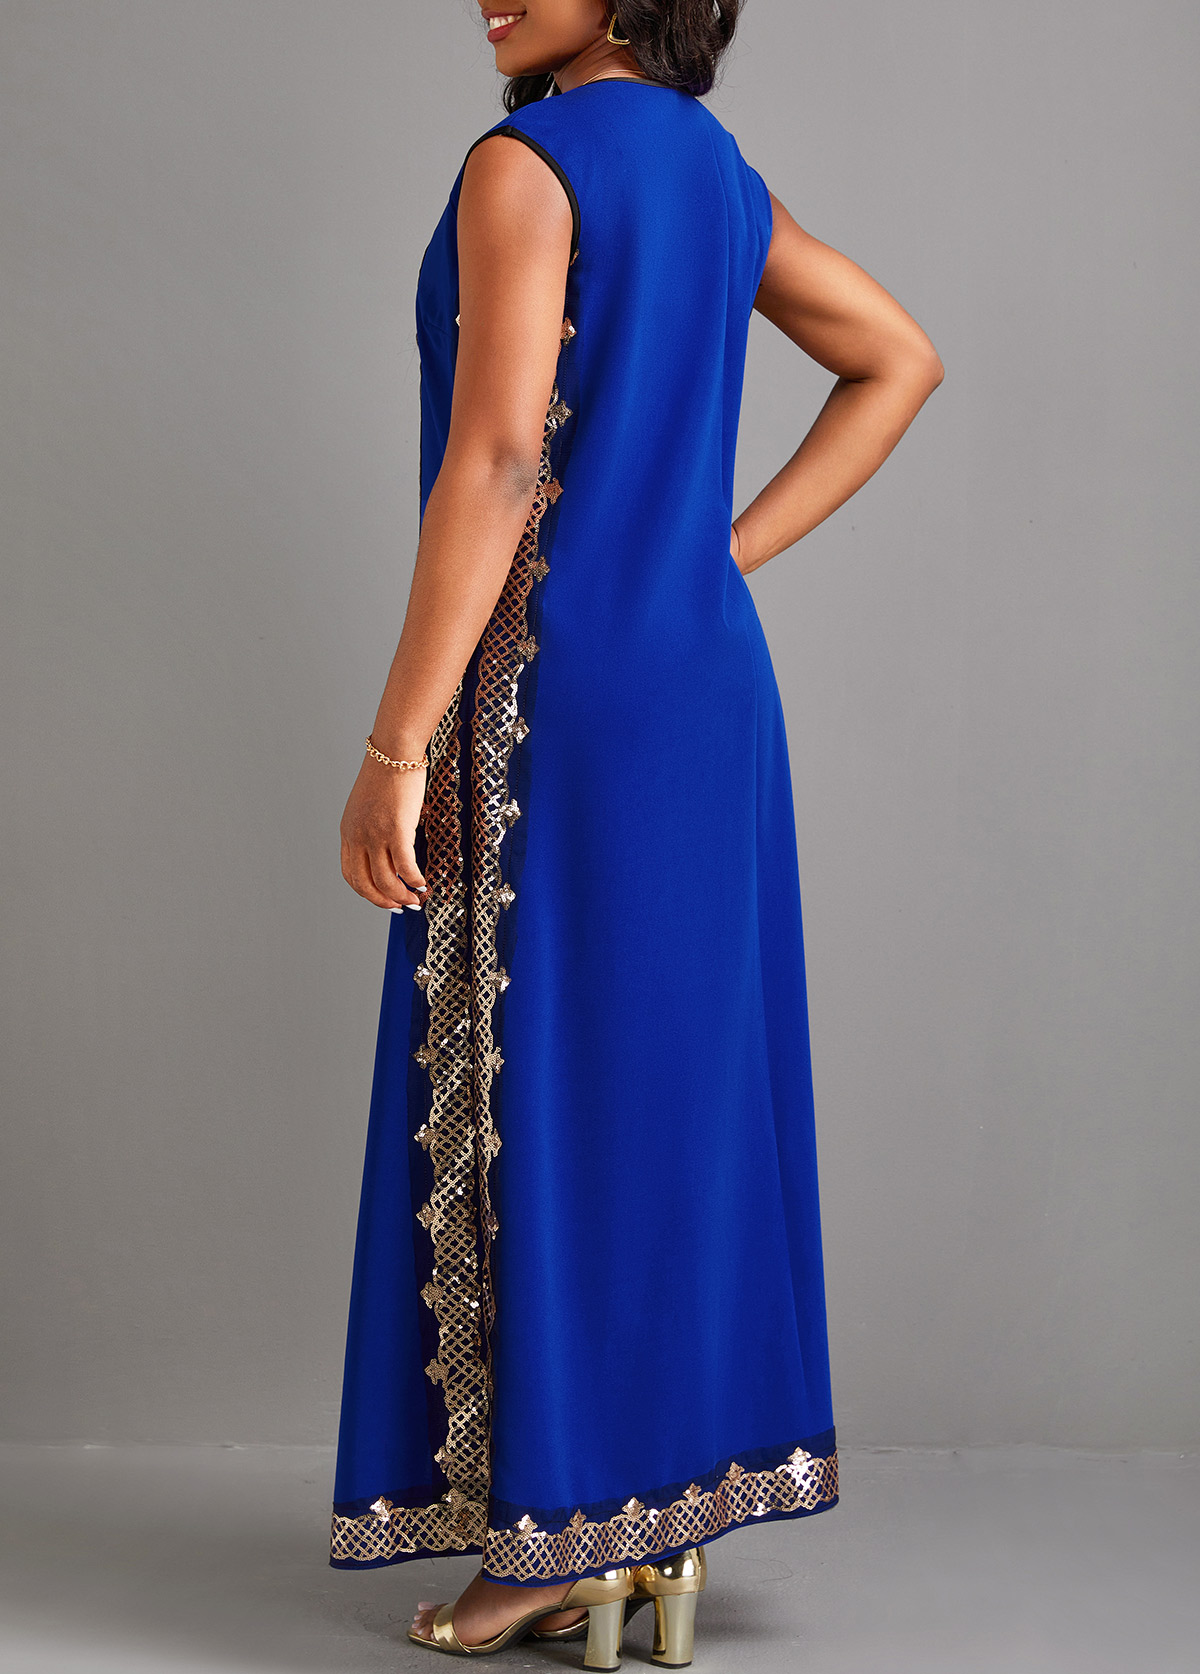 Sequin Blue Two Piece Suit Maxi Dress